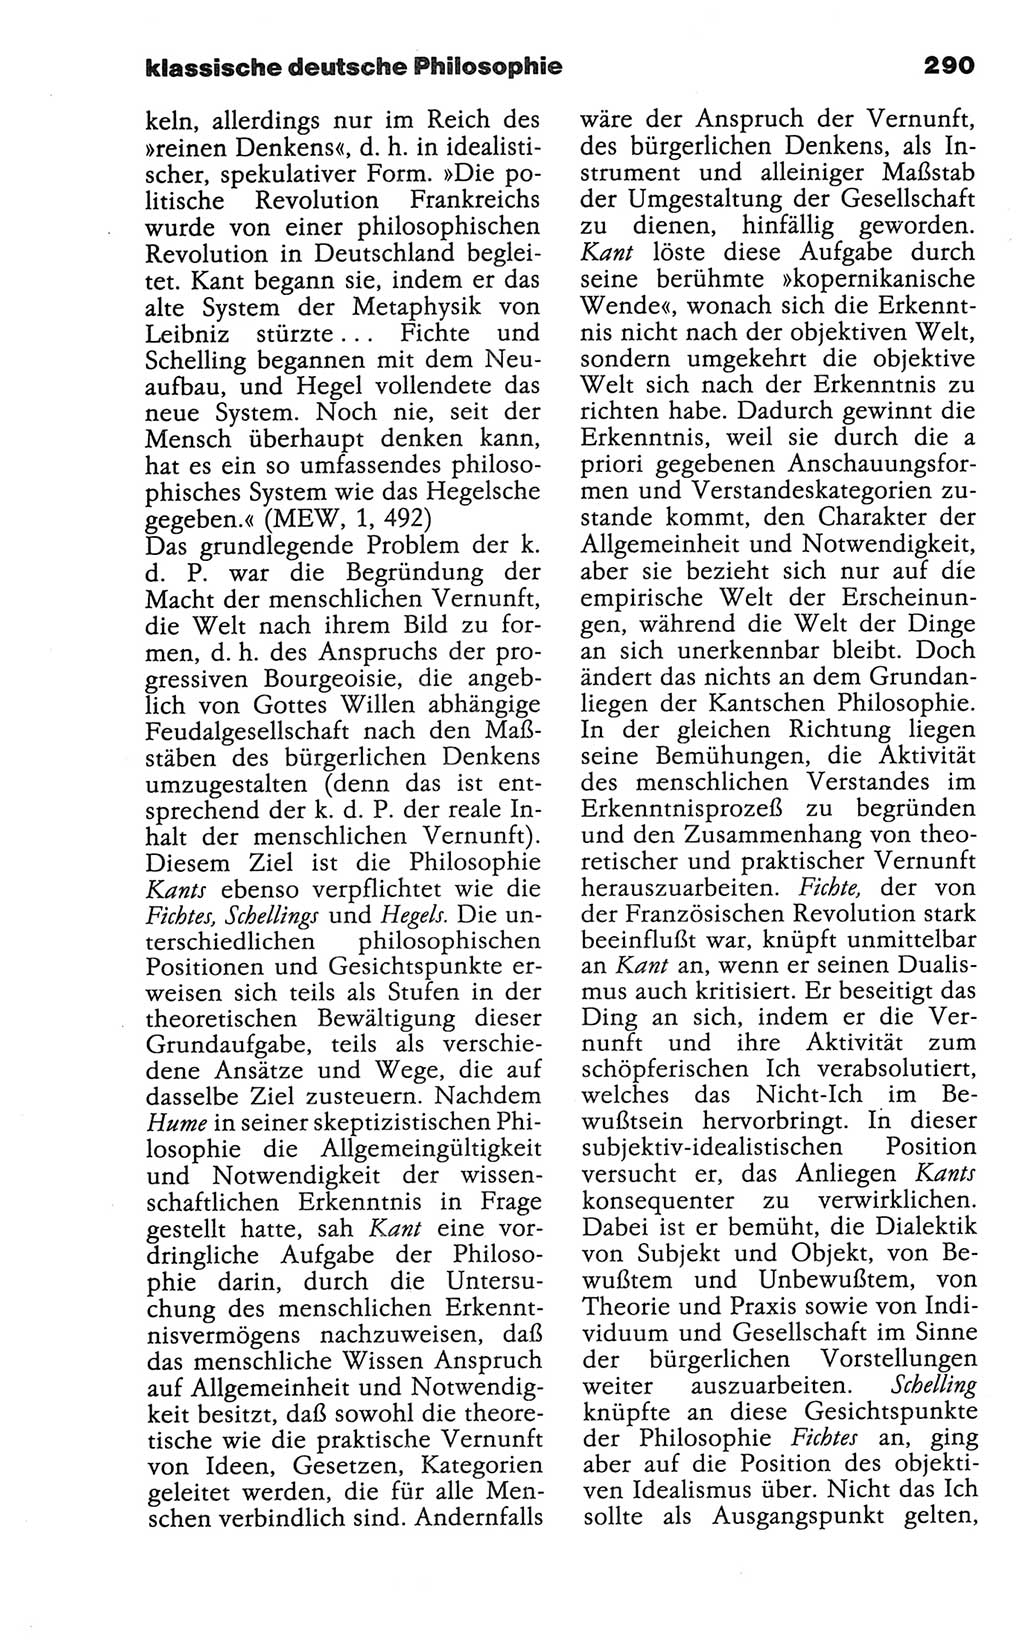 Wörterbuch der marxistisch-leninistischen Philosophie [Deutsche Demokratische Republik (DDR)] 1986, Seite 290 (Wb. ML Phil. DDR 1986, S. 290)